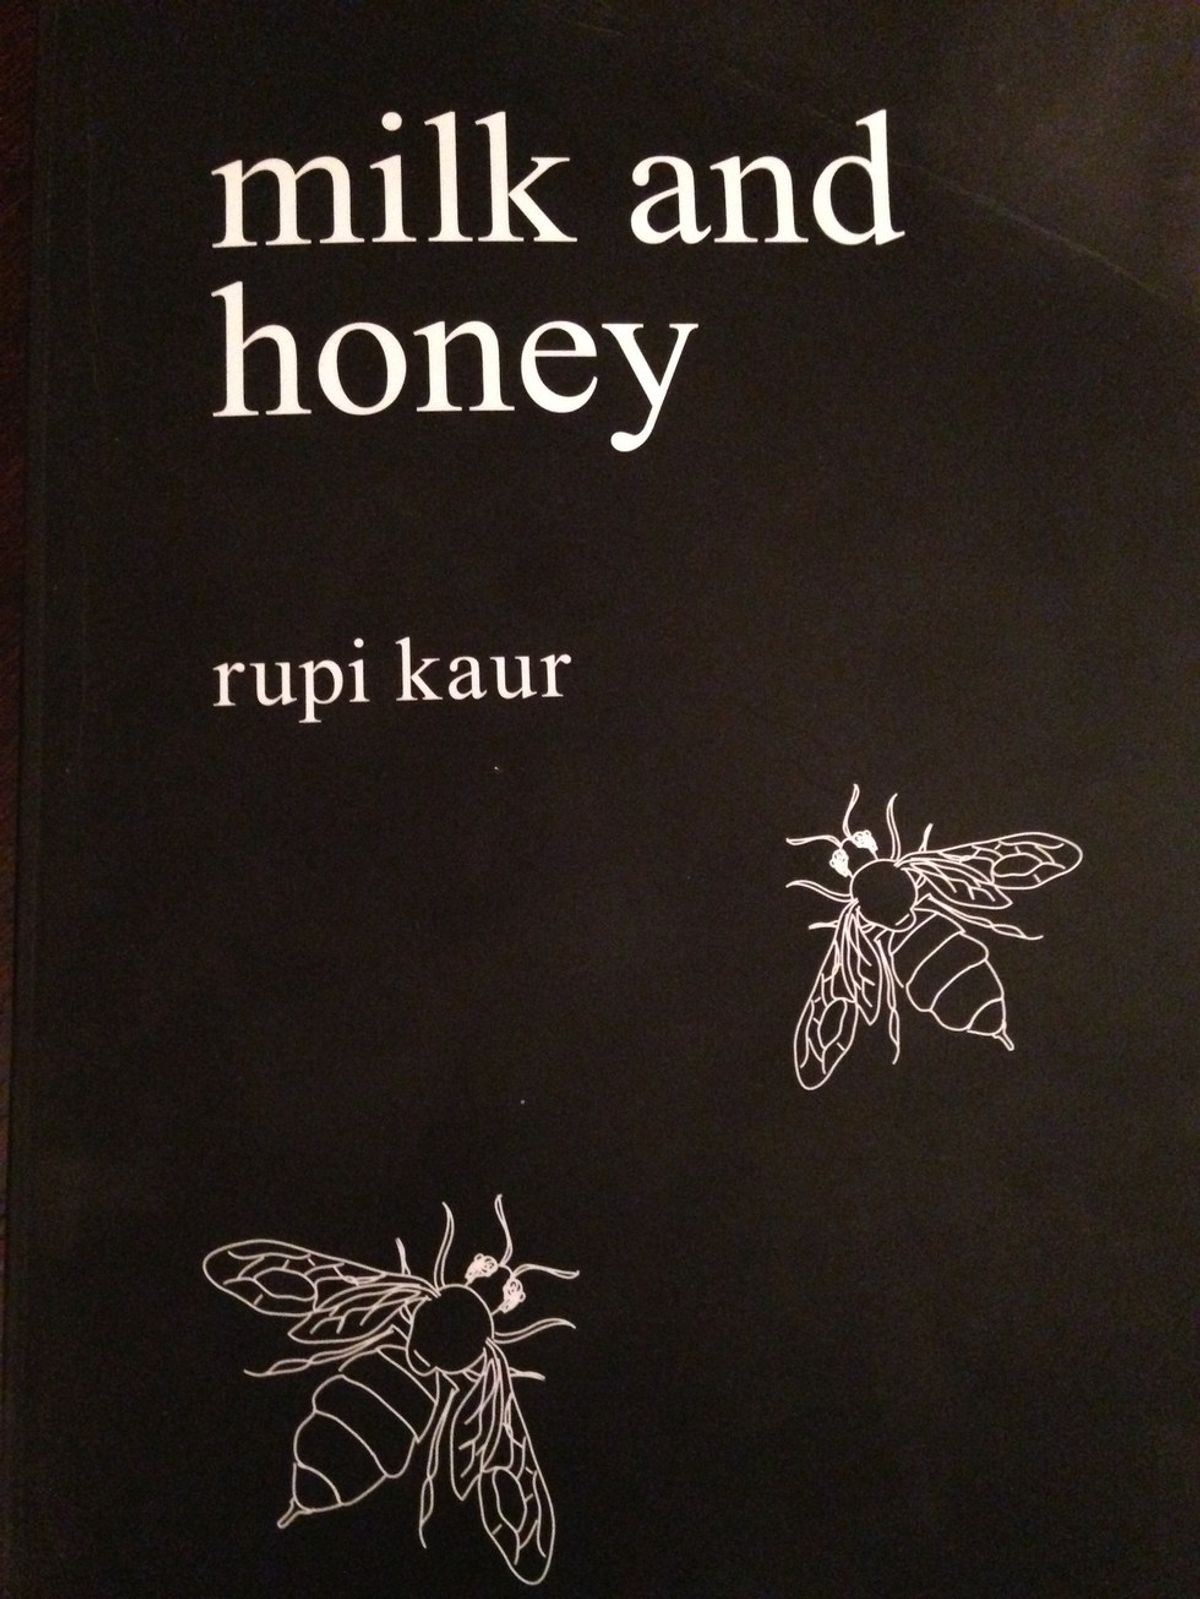 Consider Reading Rupi Kaur's Milk And Honey